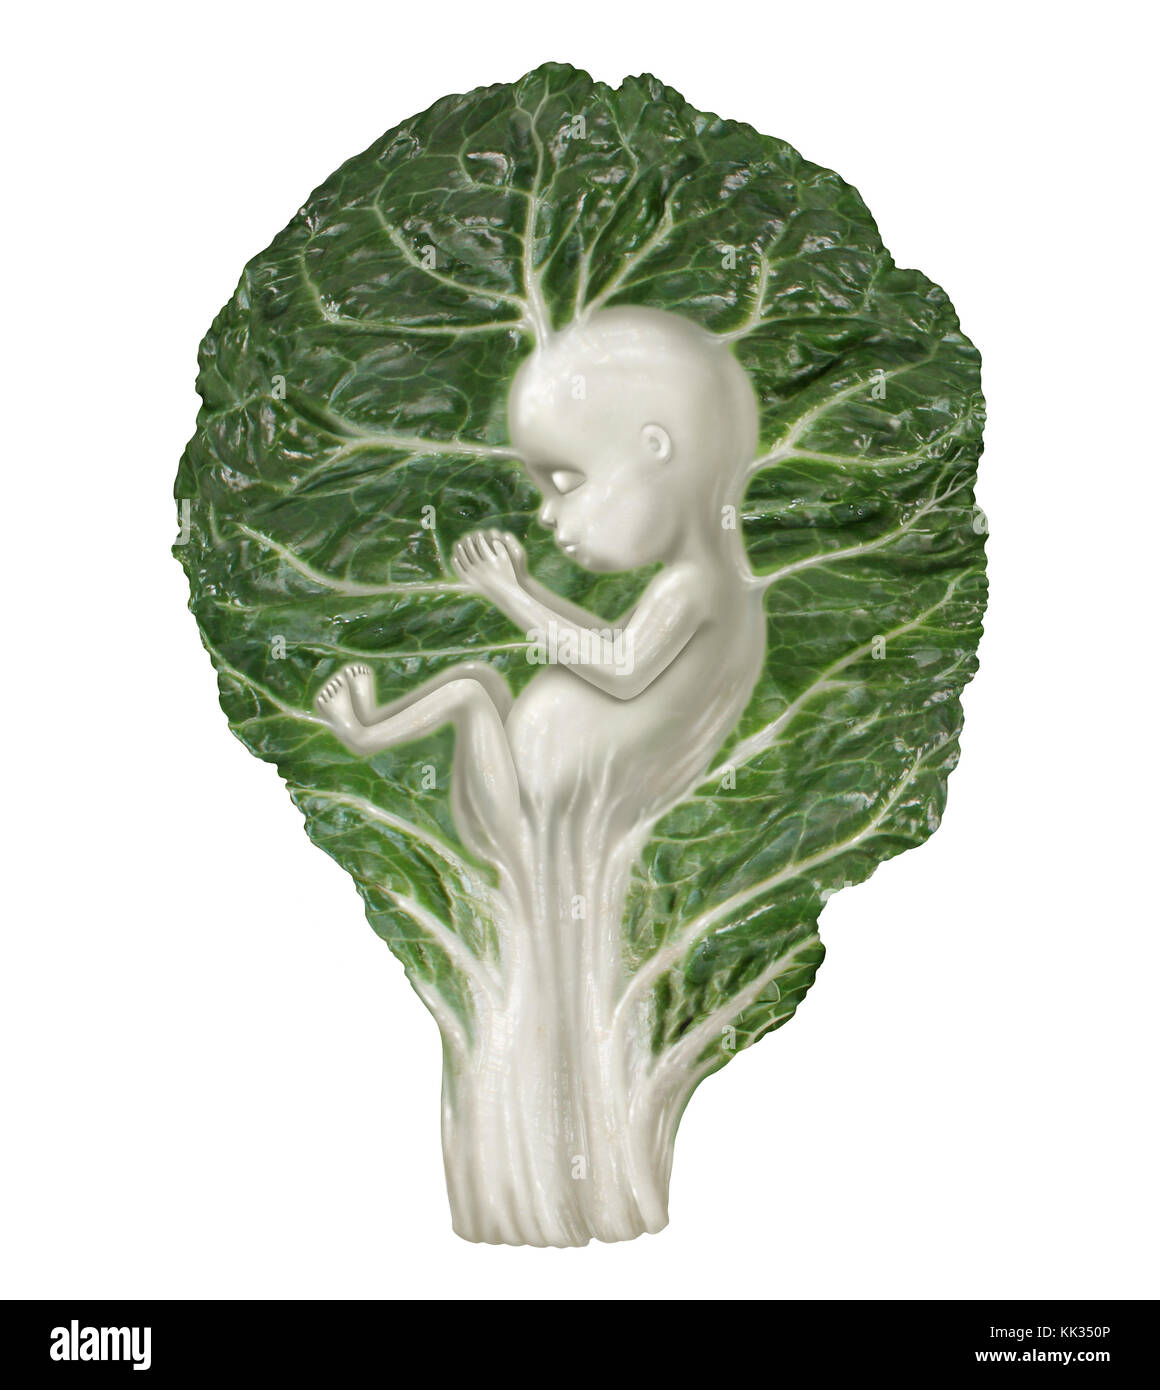 Ernährung in der Schwangerschaft und gesunde Ernährung für ein sich entwickelndes Baby als Grünkohl-Gemüseblatt geformt wie ein menschlicher Fötus als Ernährung für Ihr Baby. Stockfoto